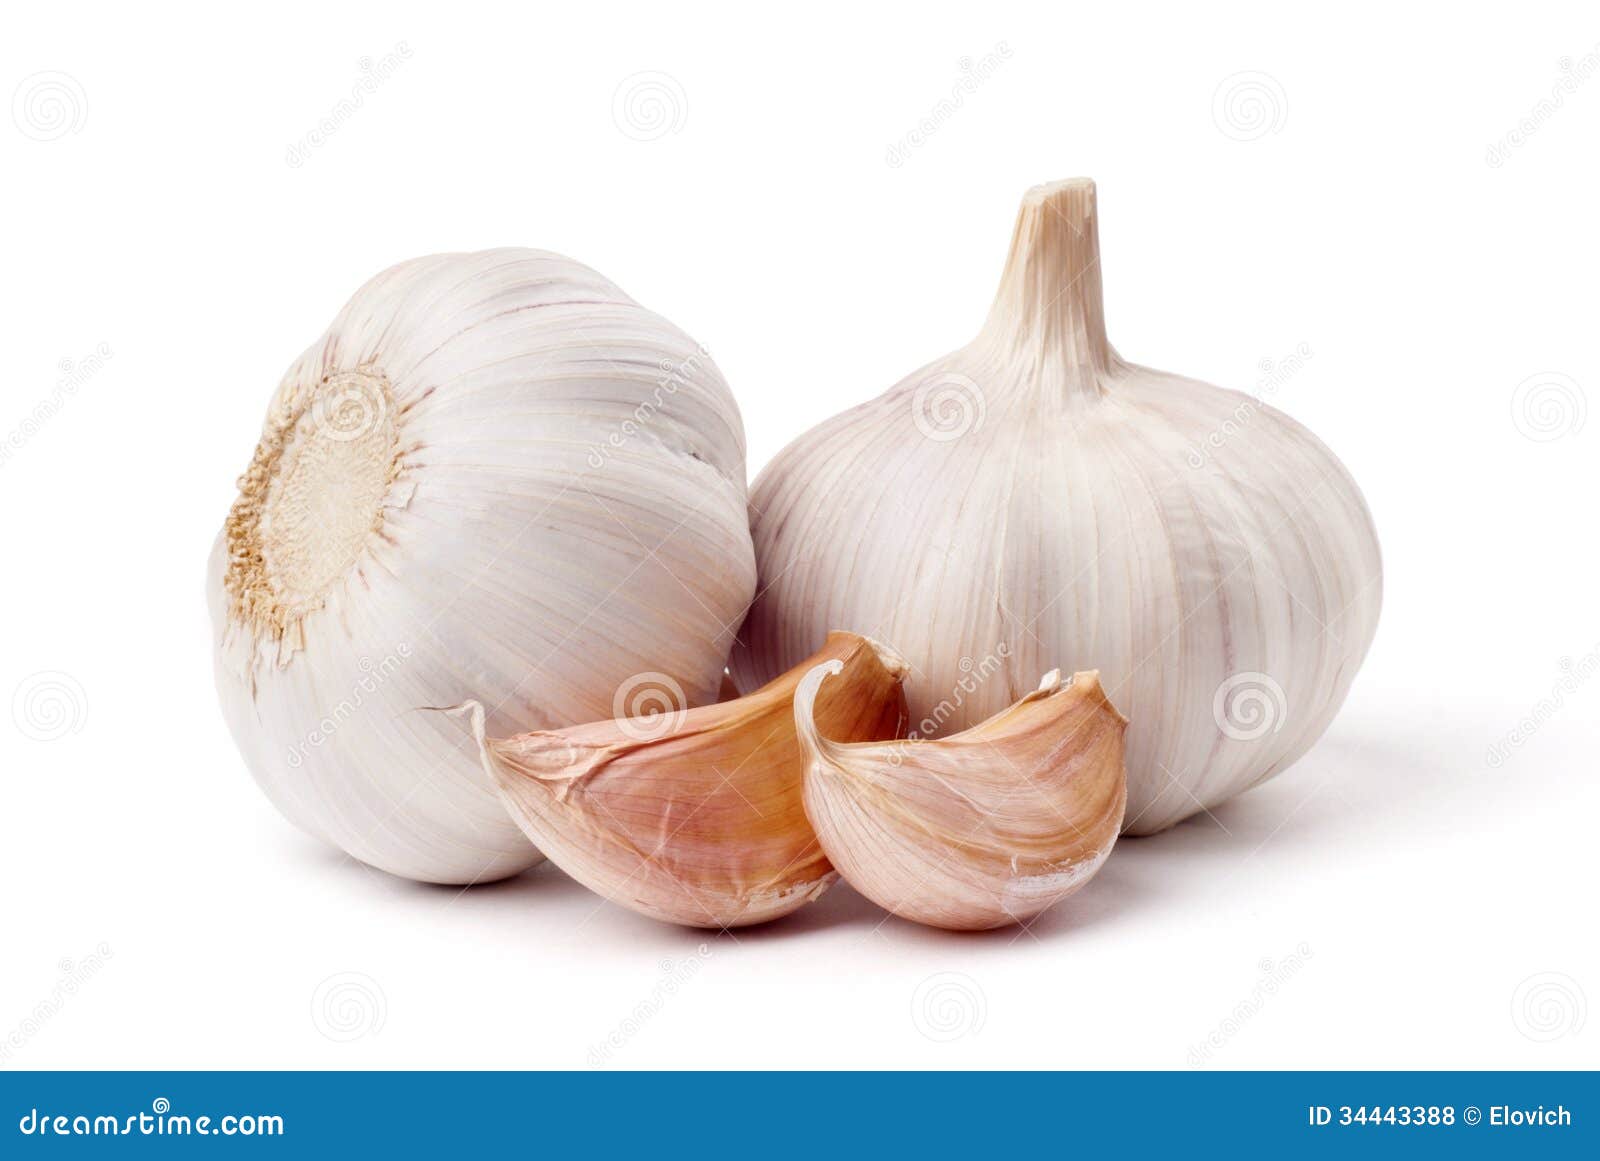 garlic  on white background